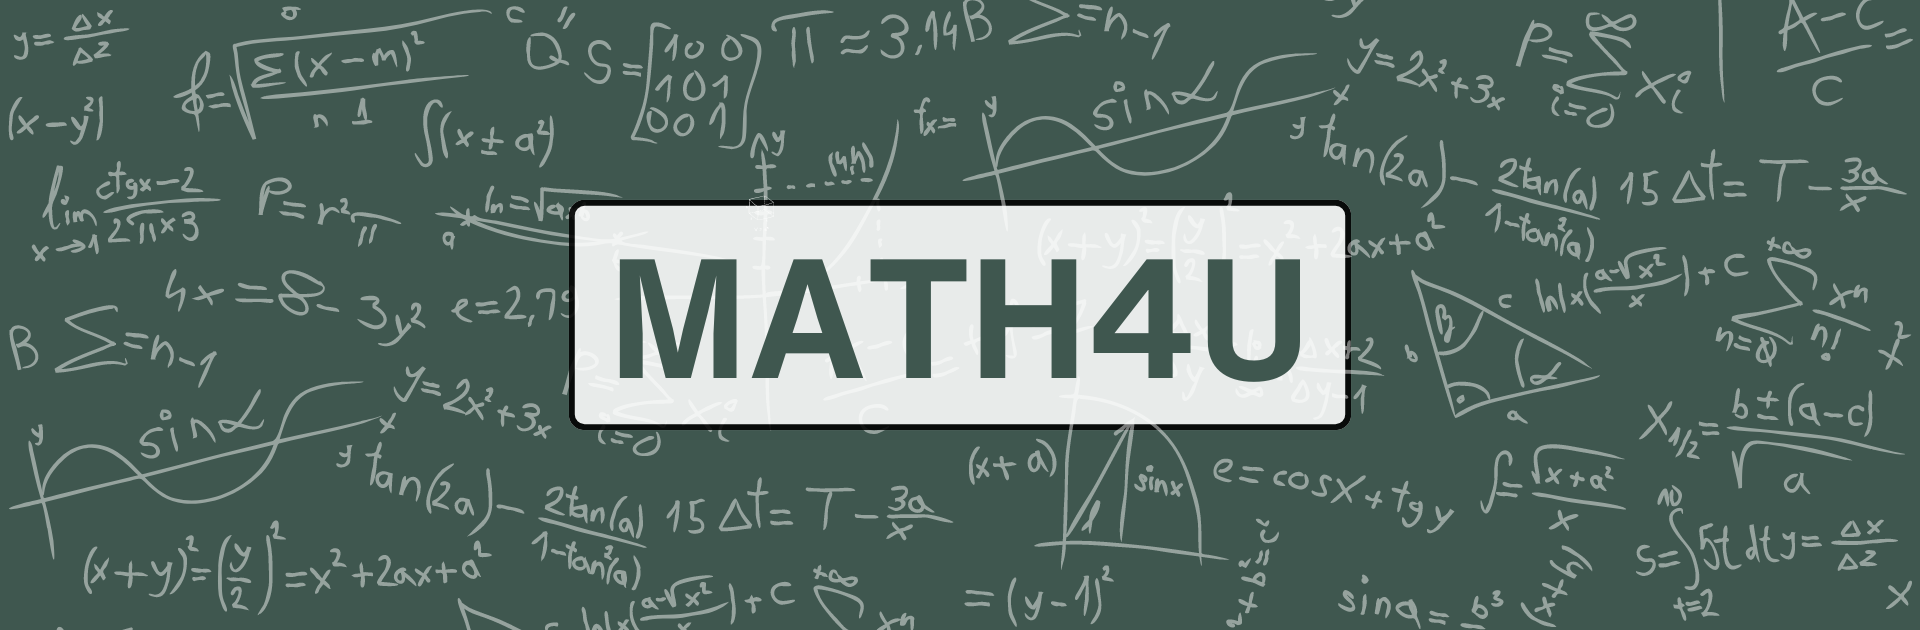 MATH4U Banner